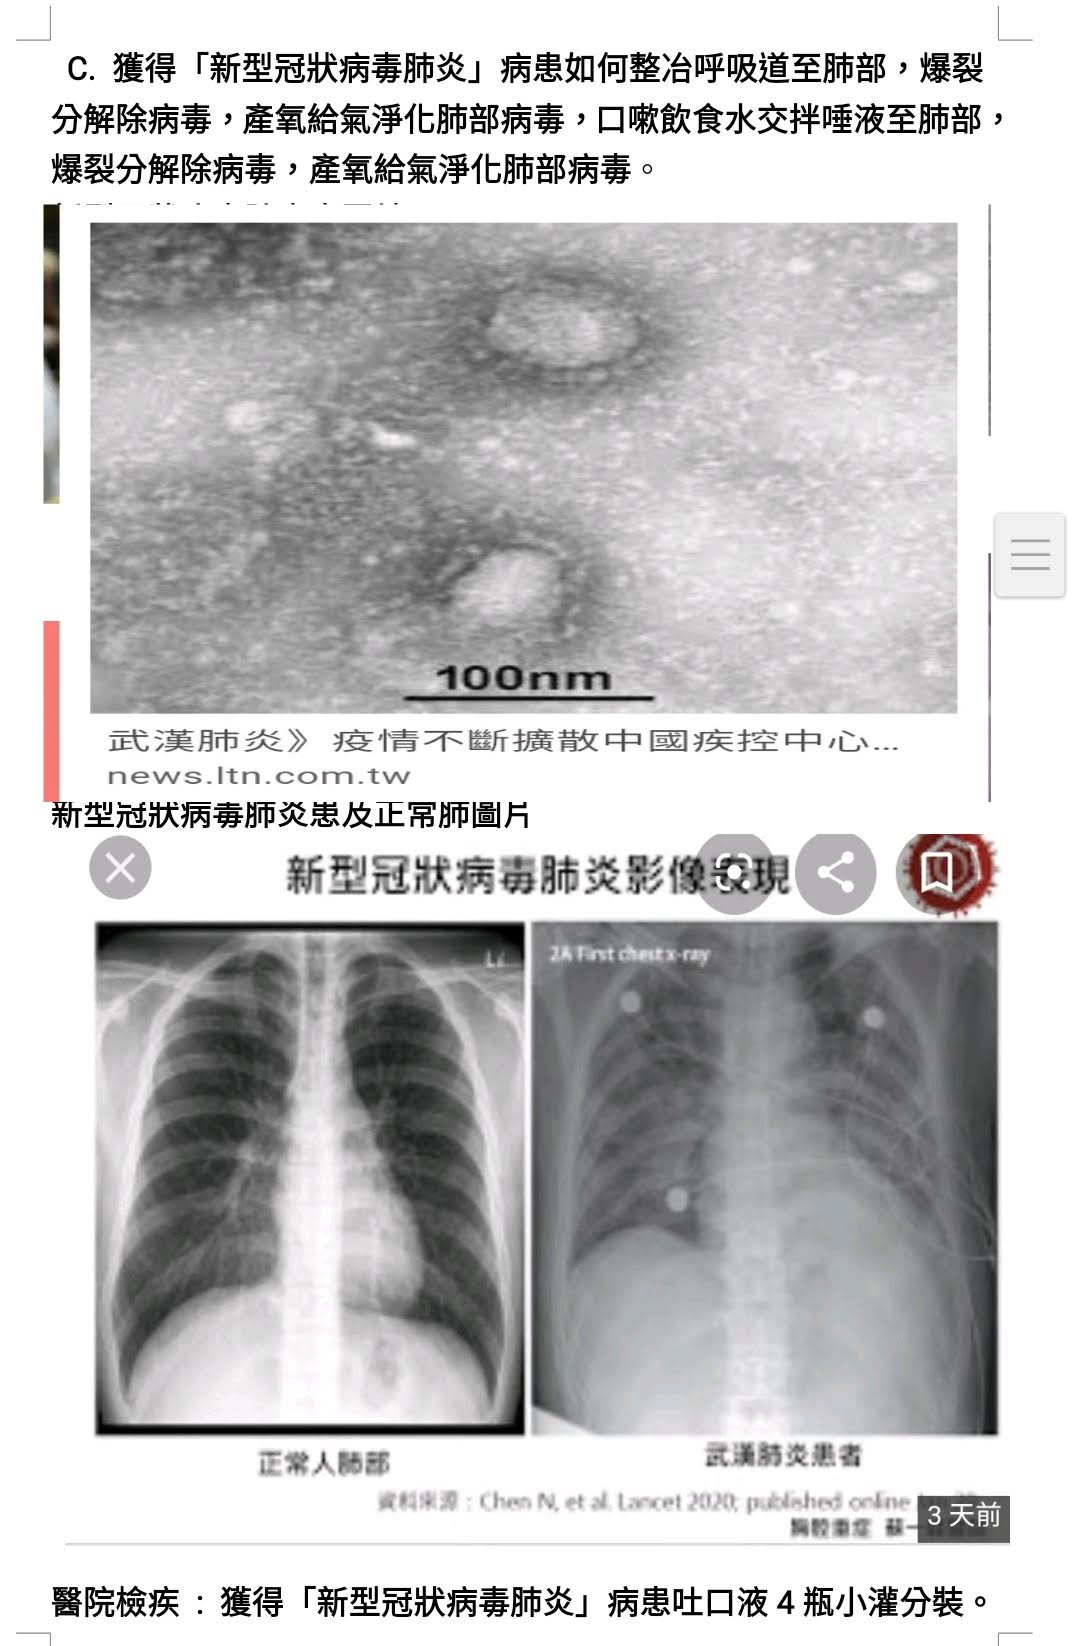 第二張武漢新型冠狀病毒肺炎